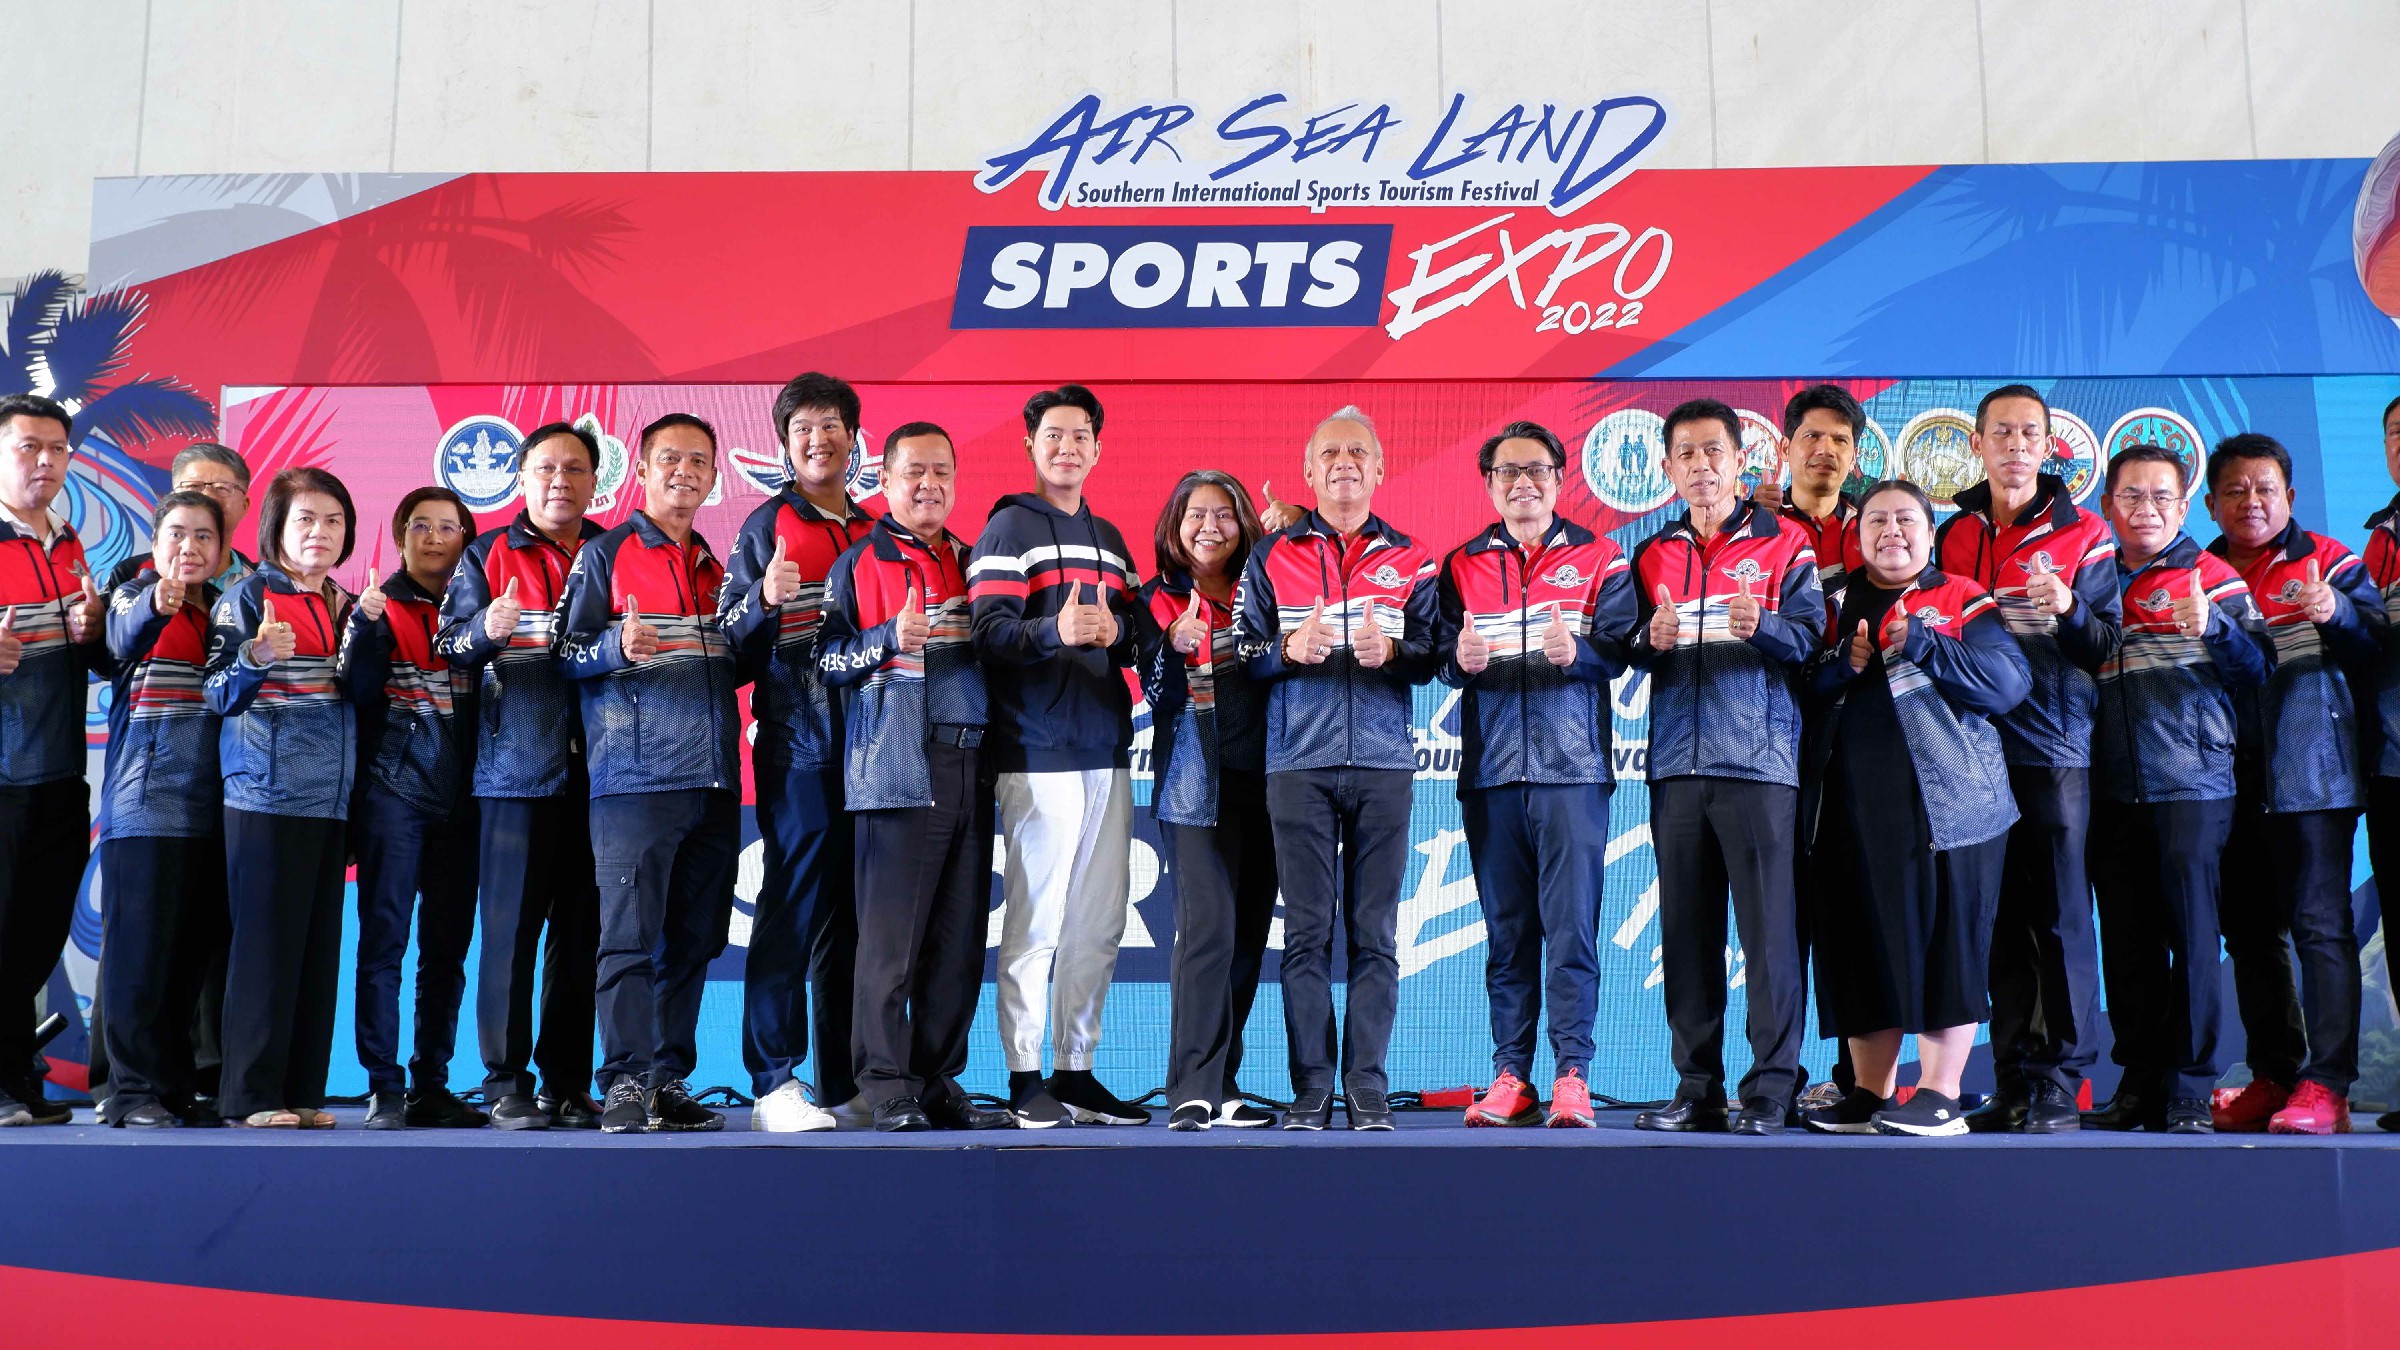 รมว.พิพัฒน์ เปิดจัดแข่งกีฬาควบคู่กิจกรรมกระตุ้นเศรษฐกิจกกท. ผนึกจังหวัดสงขลา จัด Air Sea Land Sports Expo